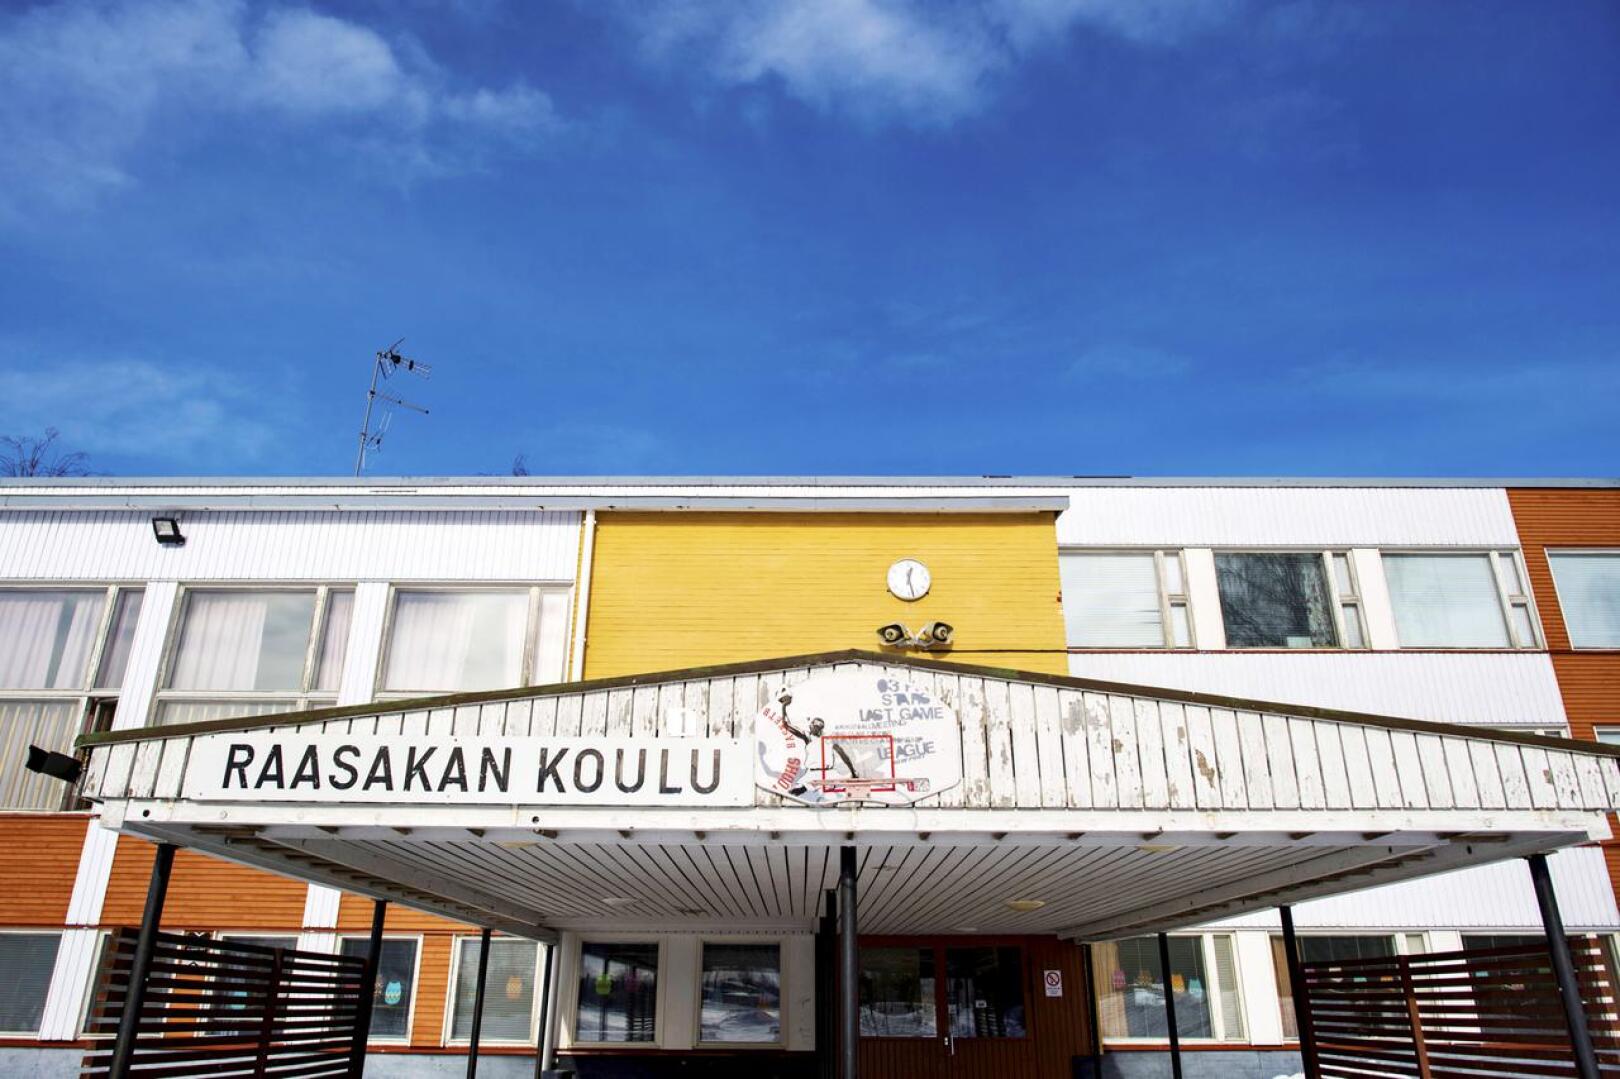 Raasakan koulun uudisrakentamisen valmistelu jatkuu Kannuksessa aiemmin tehtyjen linjausten mukaisesti. Kaupunginhallitus käsitteli tiistaina aiheesta jätettyä valtuustoaloitetta. 